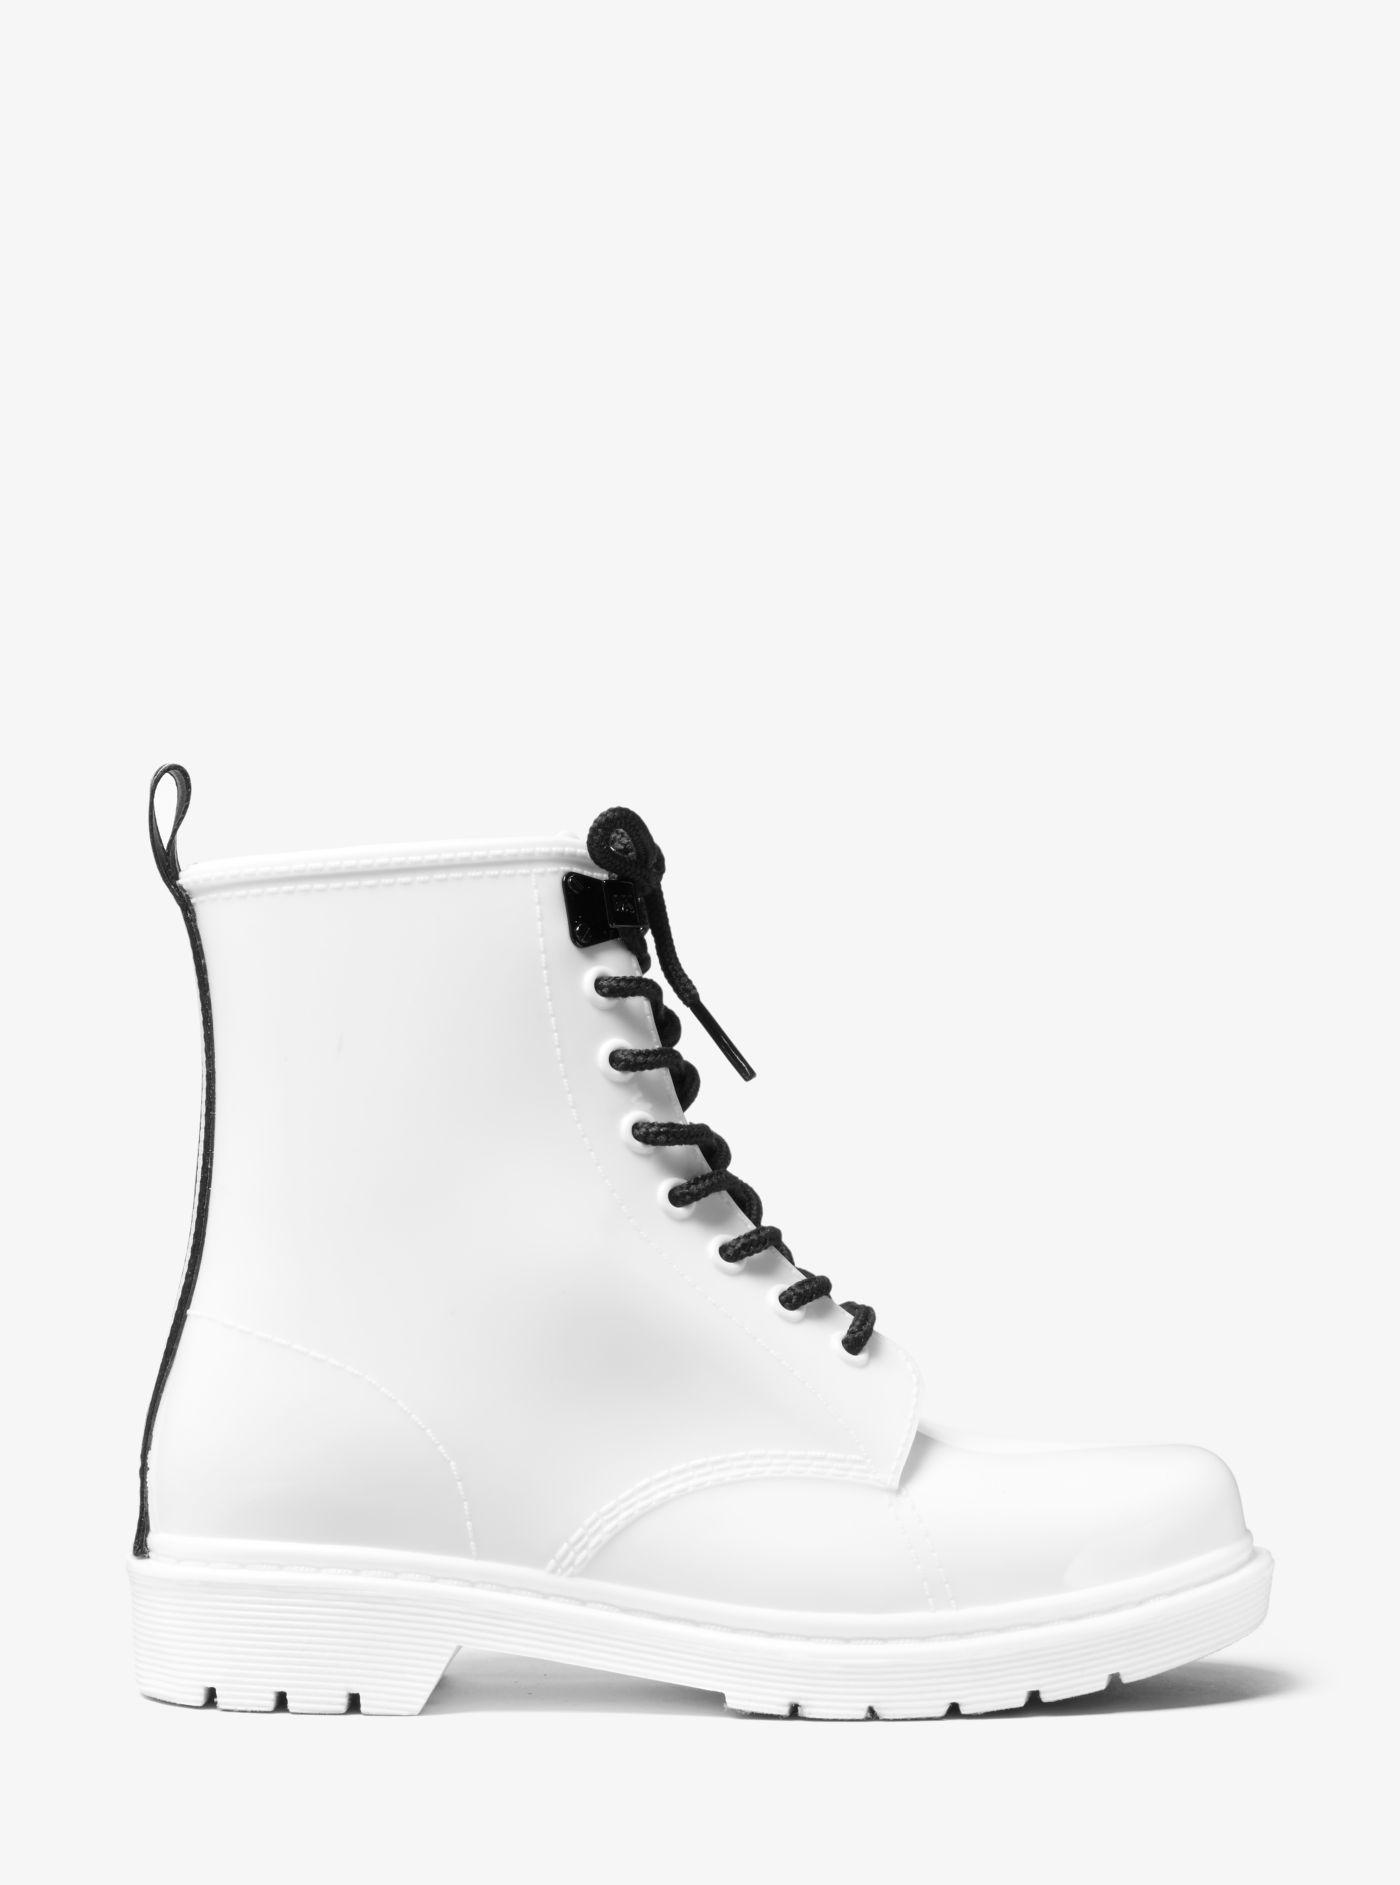 michael kors rain boots white Cheaper 